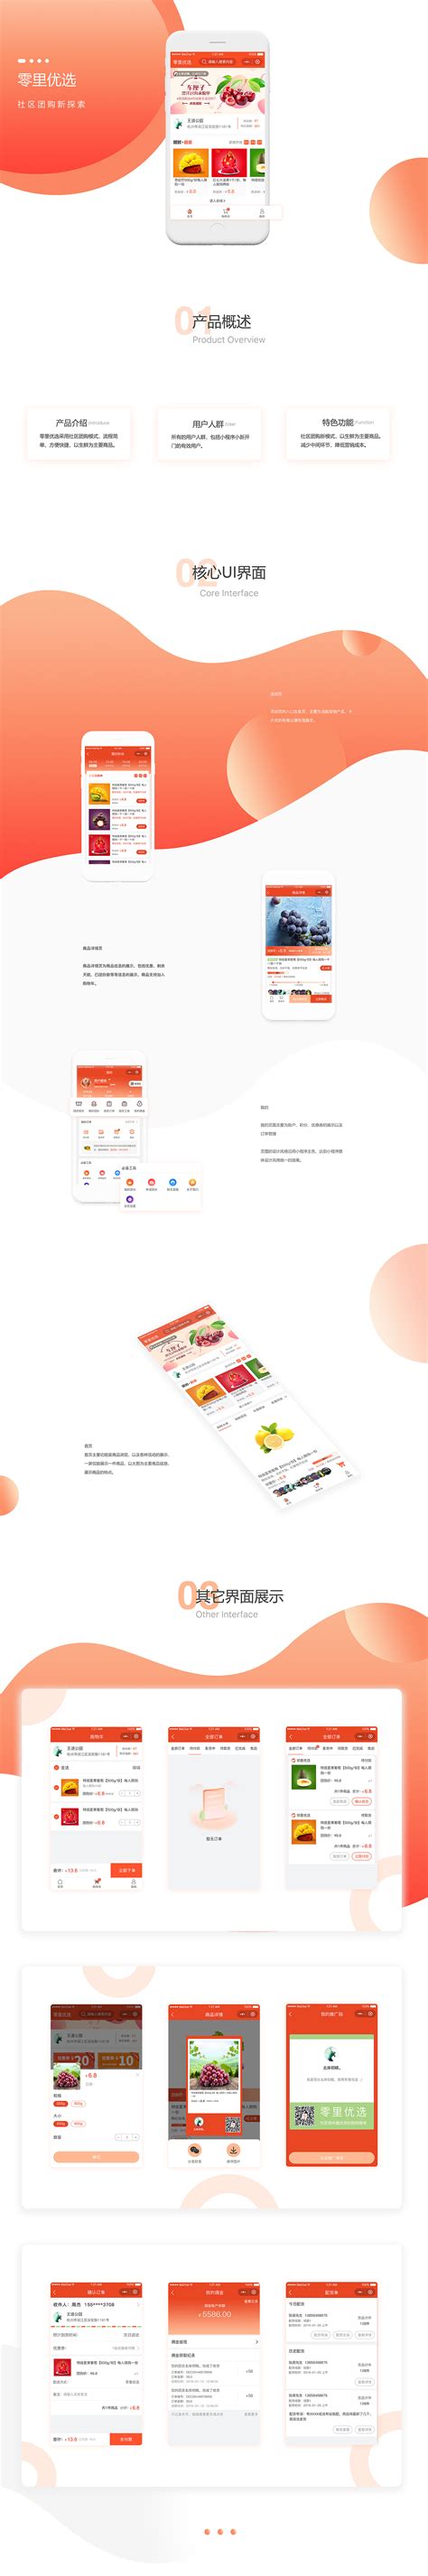 家家好购物海报PSD素材免费下载_红动中国